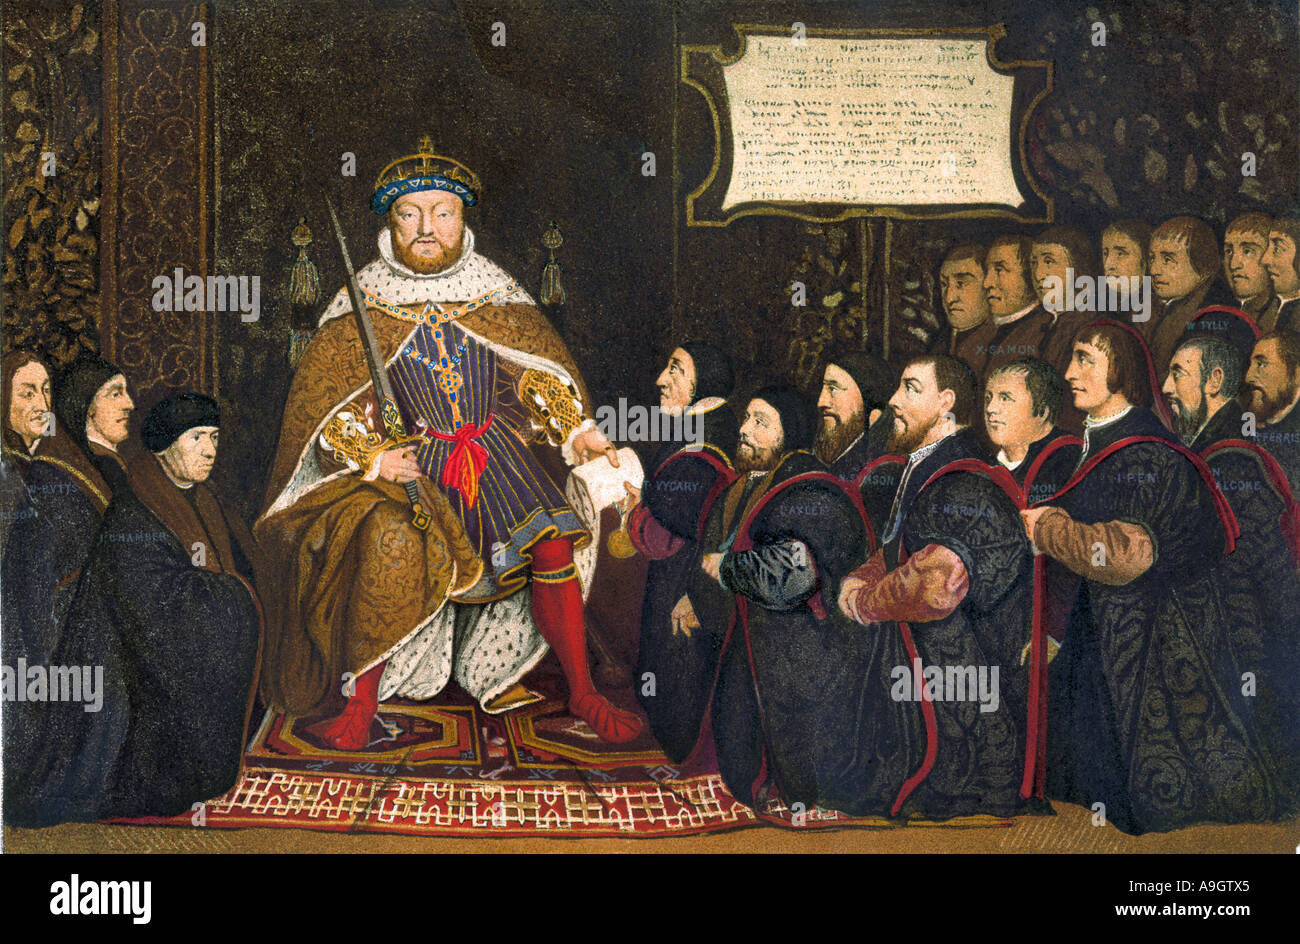 König Heinrich VIII., die eine Charta für die Unternehmen der Friseur- Chirurgen. Farblithographie Stockfoto